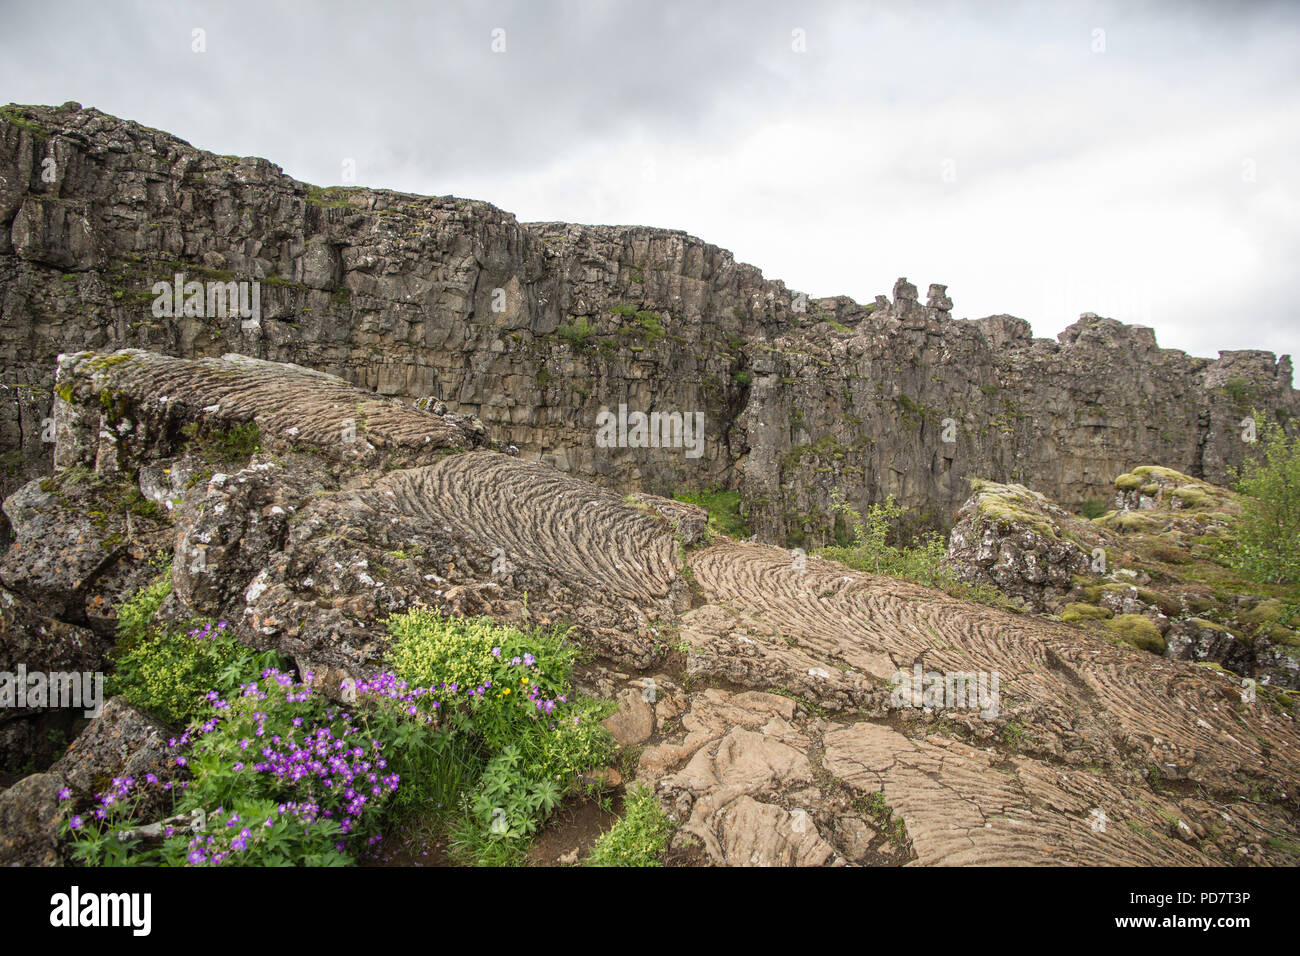 La lave pahoehoe solidifié vu en Islande Thingvellir au mid Atlantic ridge Rift Valley et aussi l'assemblée historique site de l'Althing ou rock Droit loca Banque D'Images